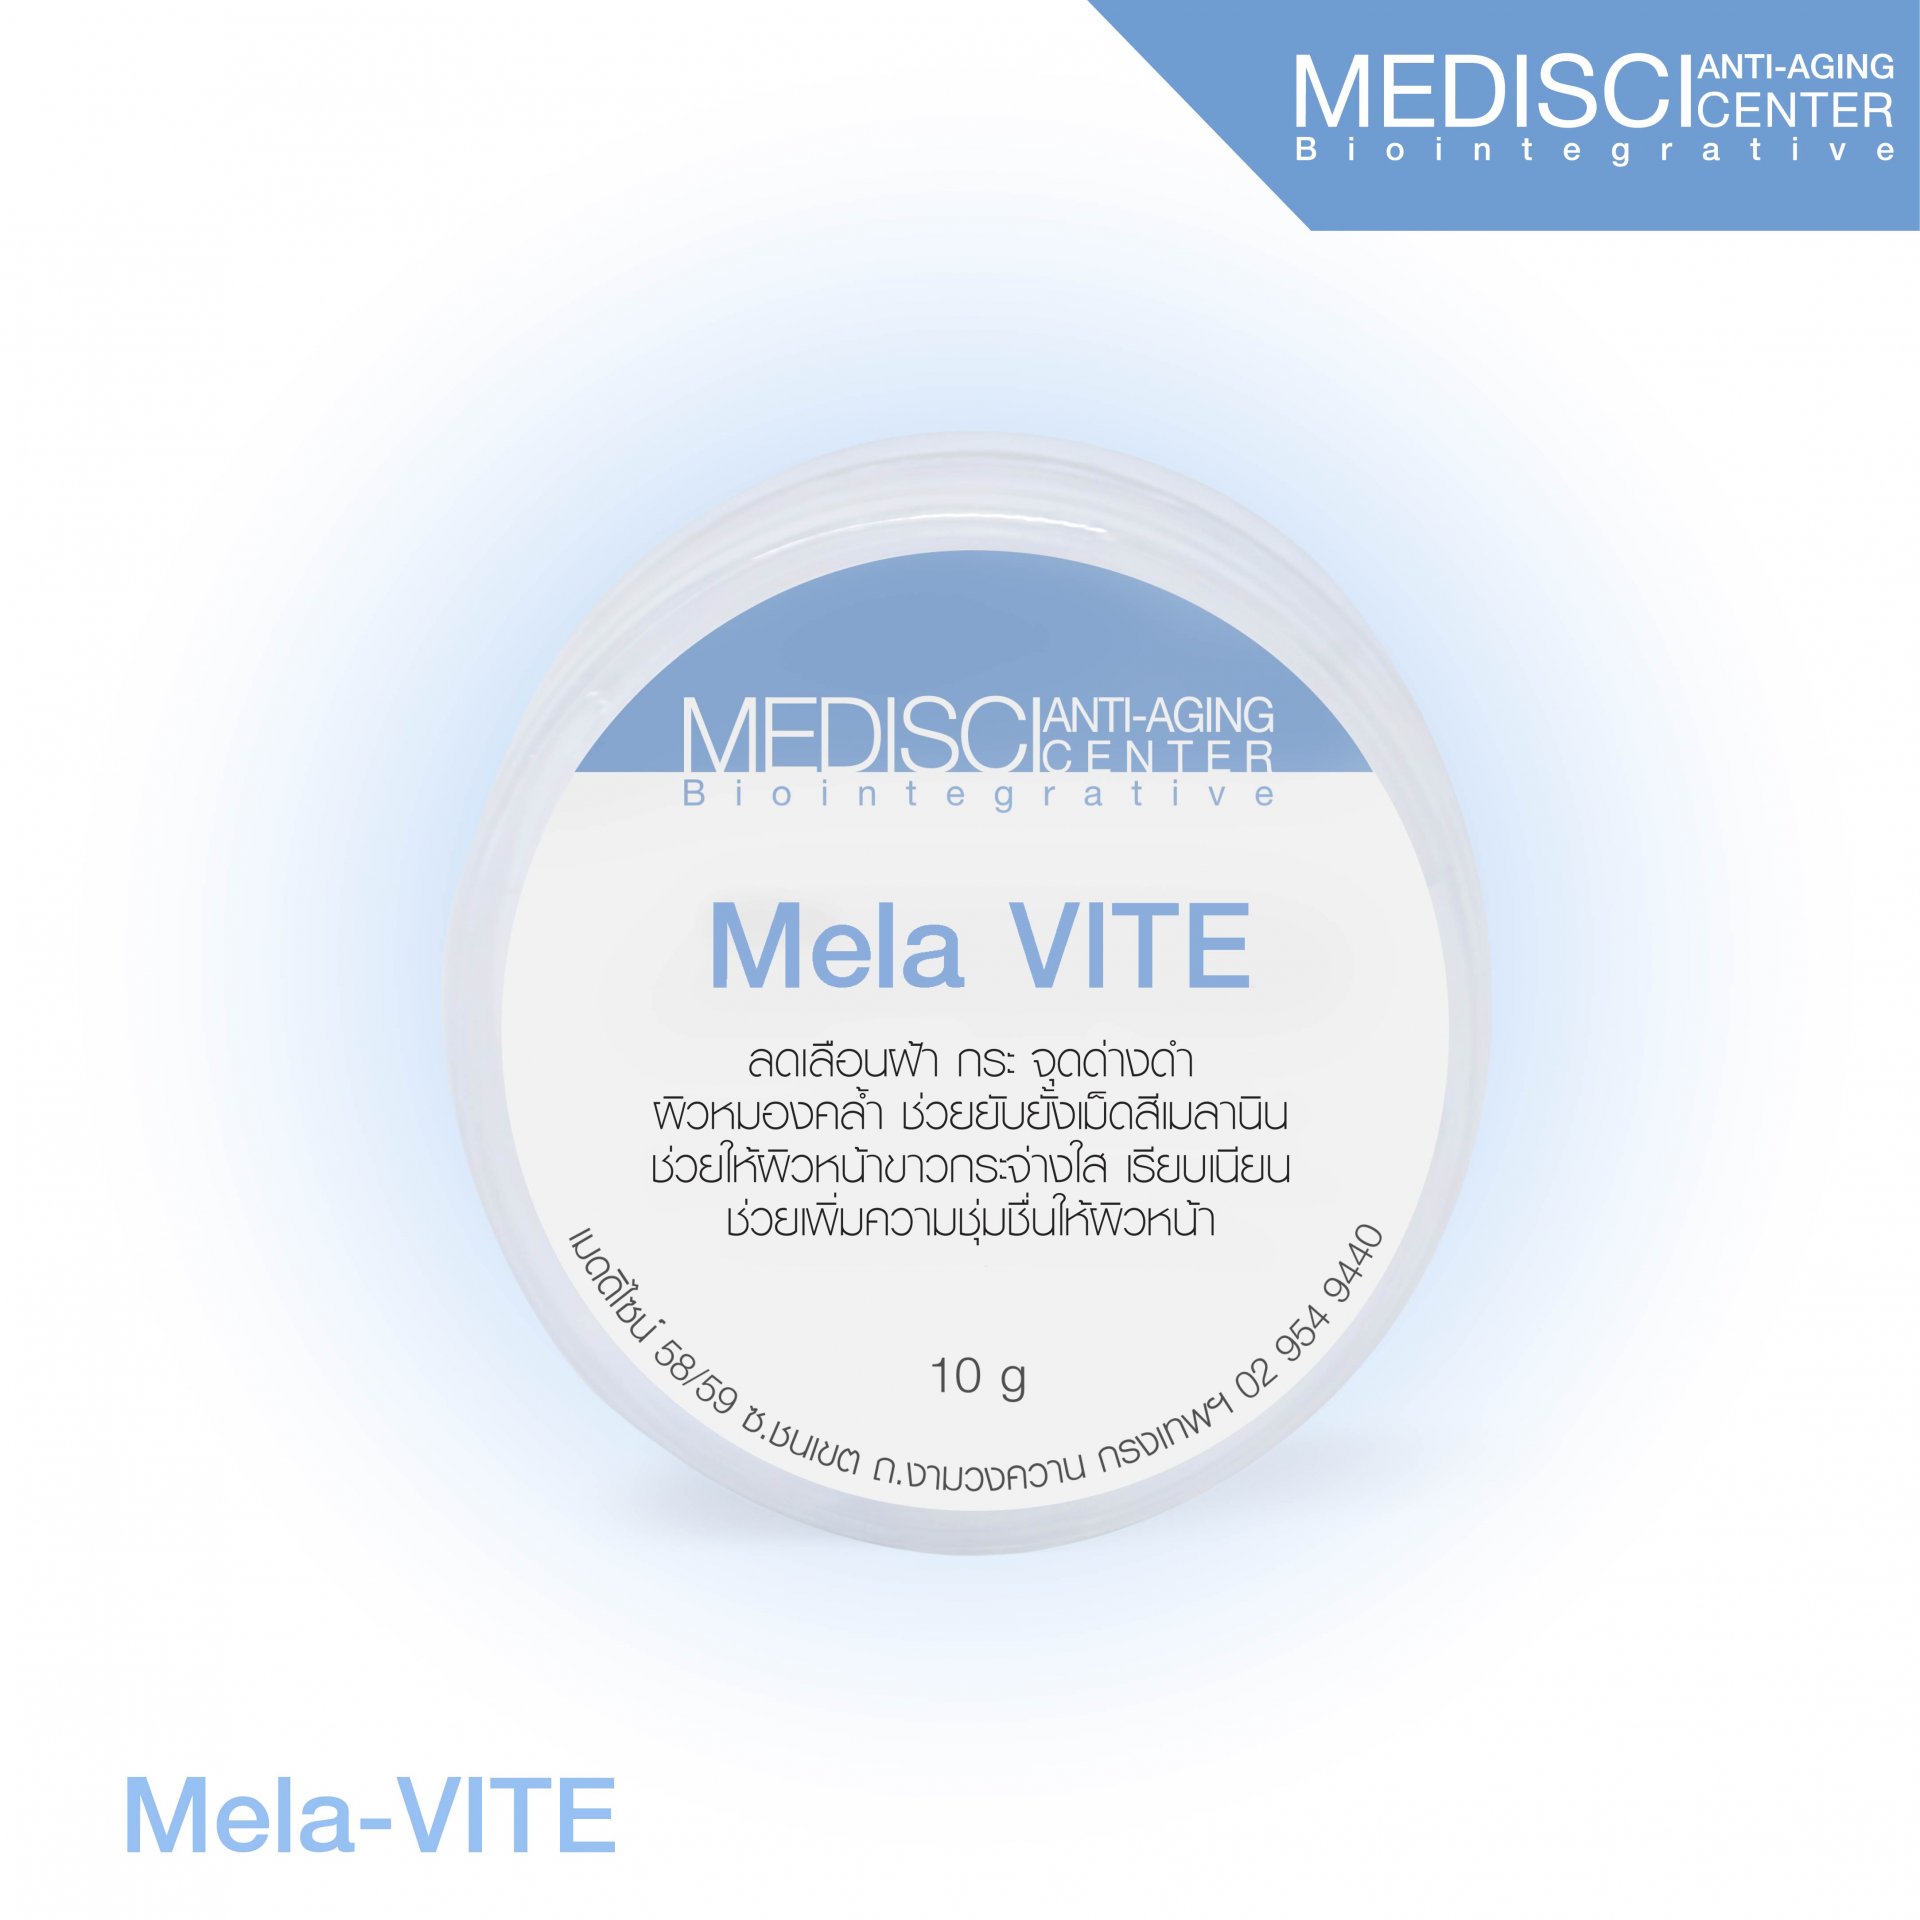 Mela VITE reduces freckles, dark spots, dull skin